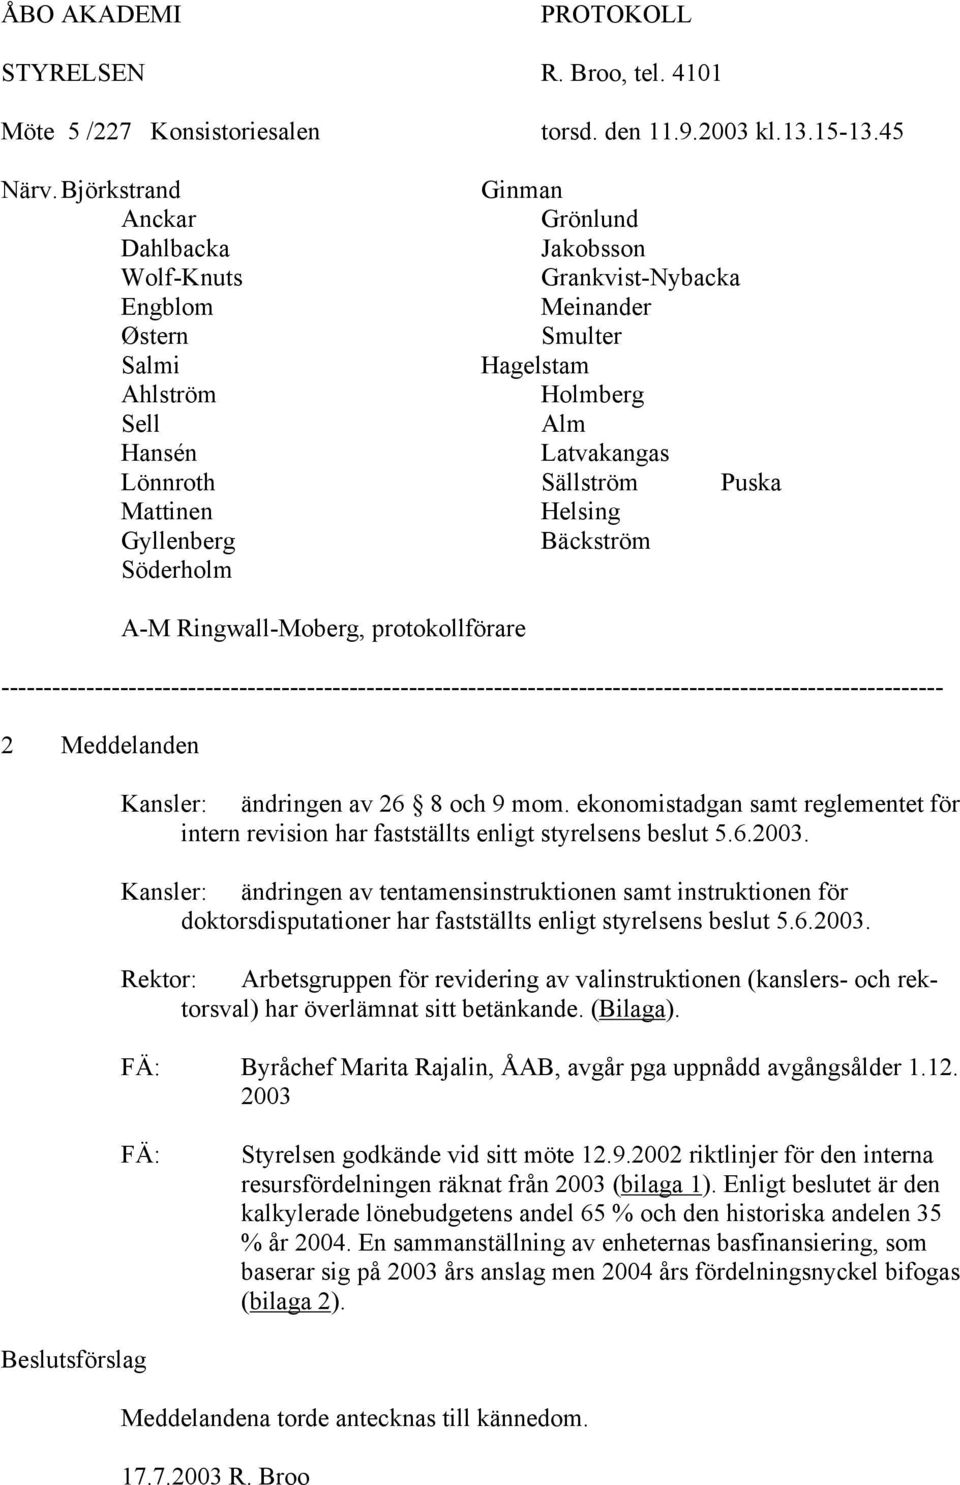 Puska Mattinen Helsing Gyllenberg Bäckström Söderholm A-M Ringwall-Moberg, protokollförare